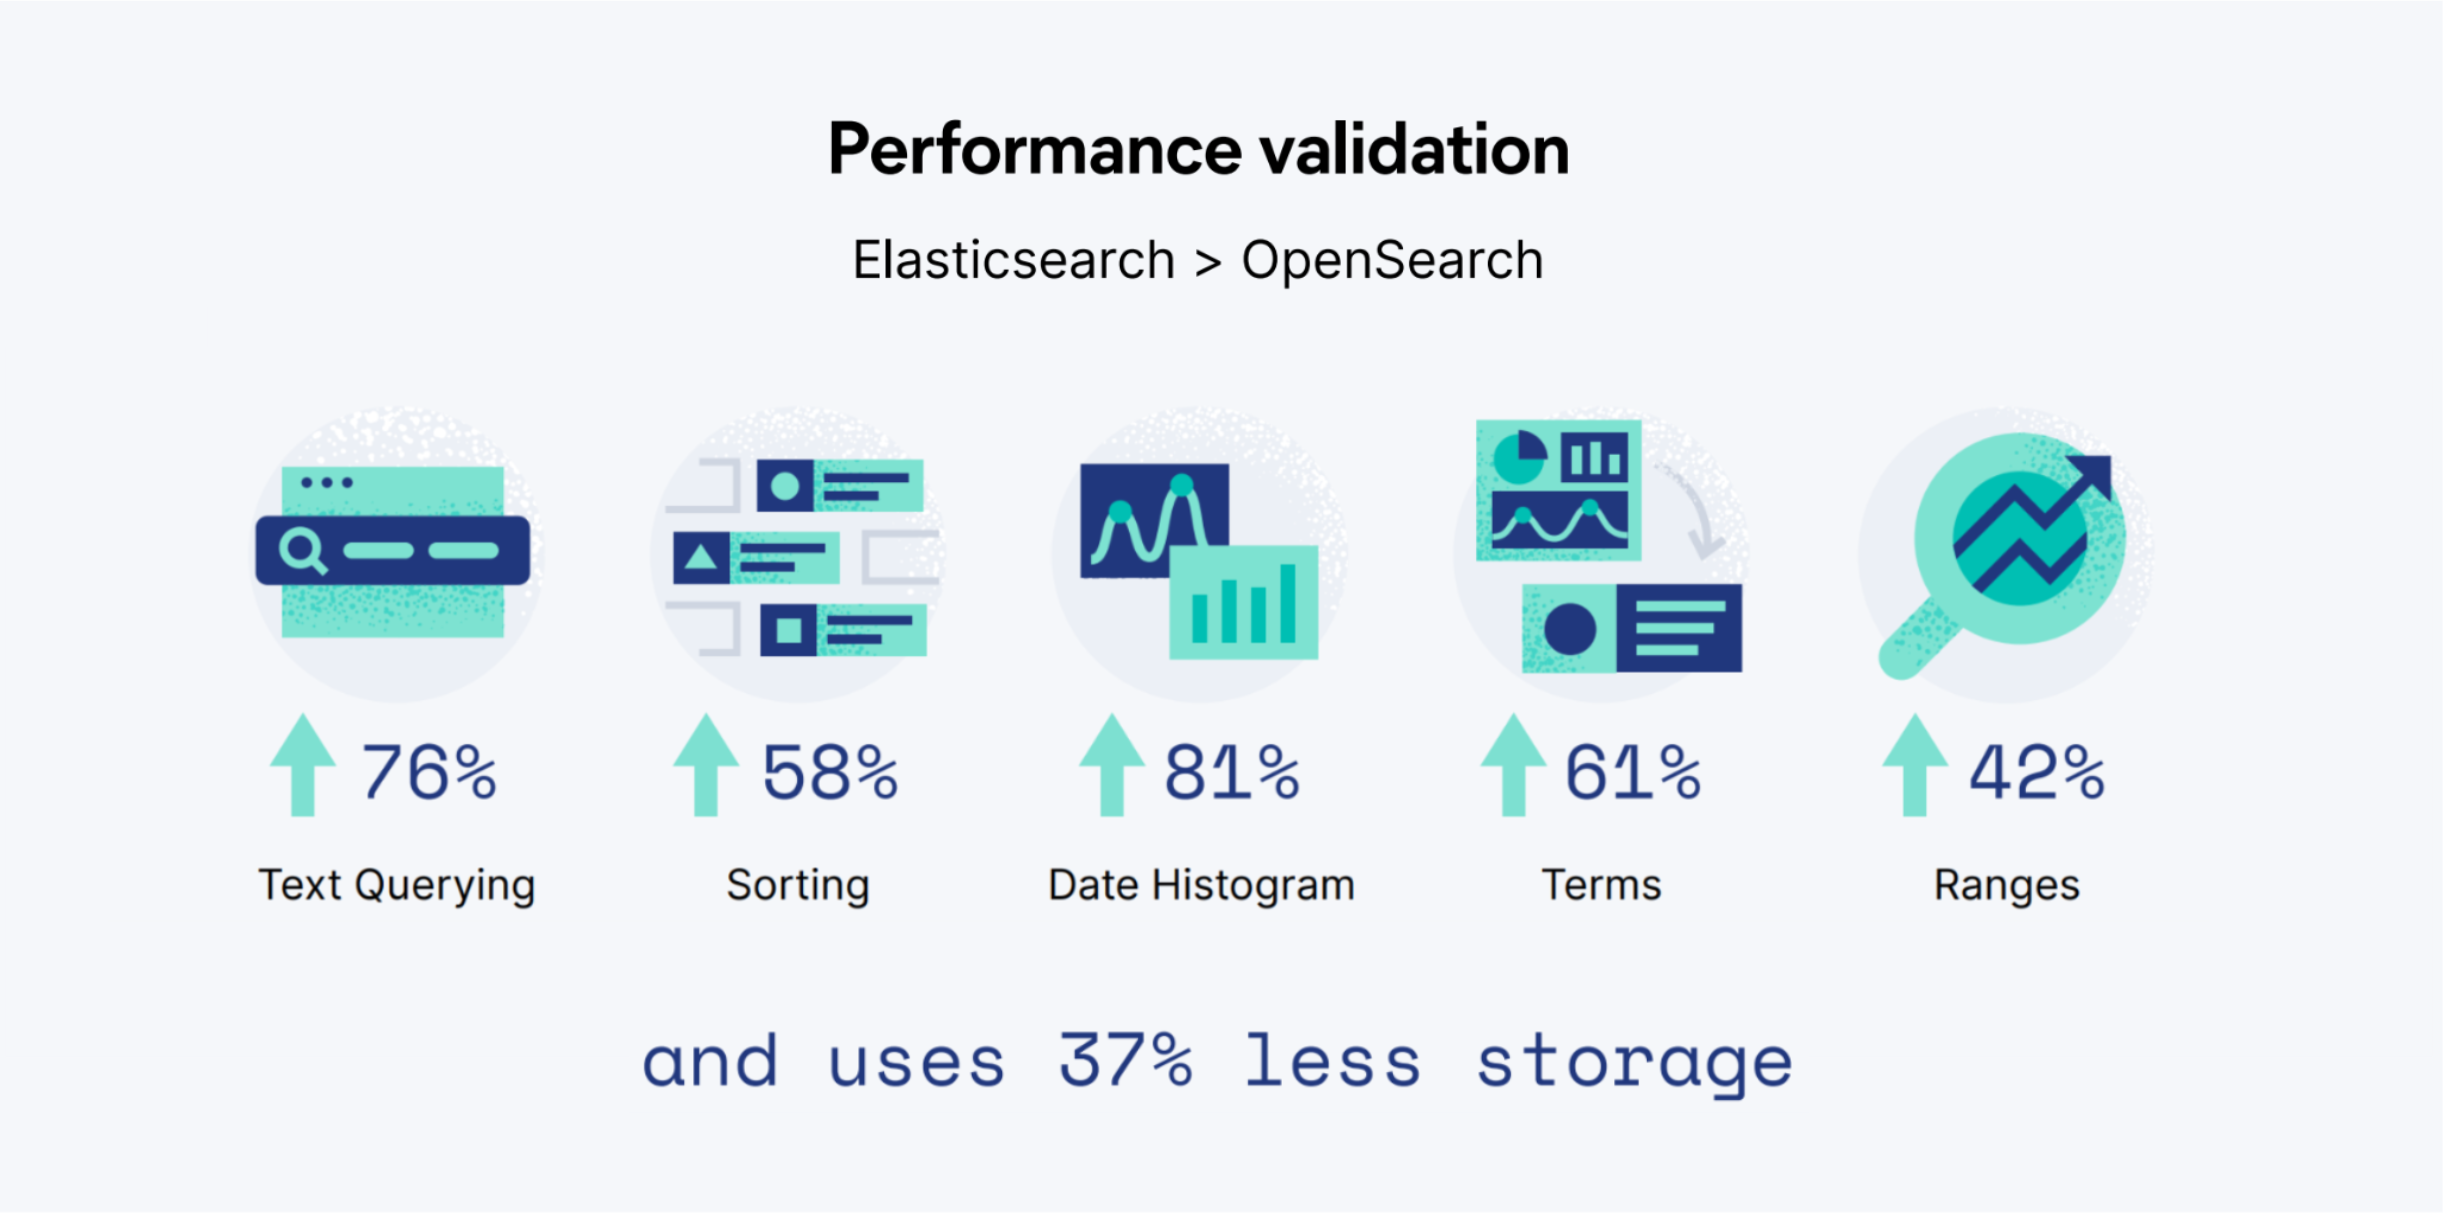 性能验证：Elasticsearch 优于 OpenSearch